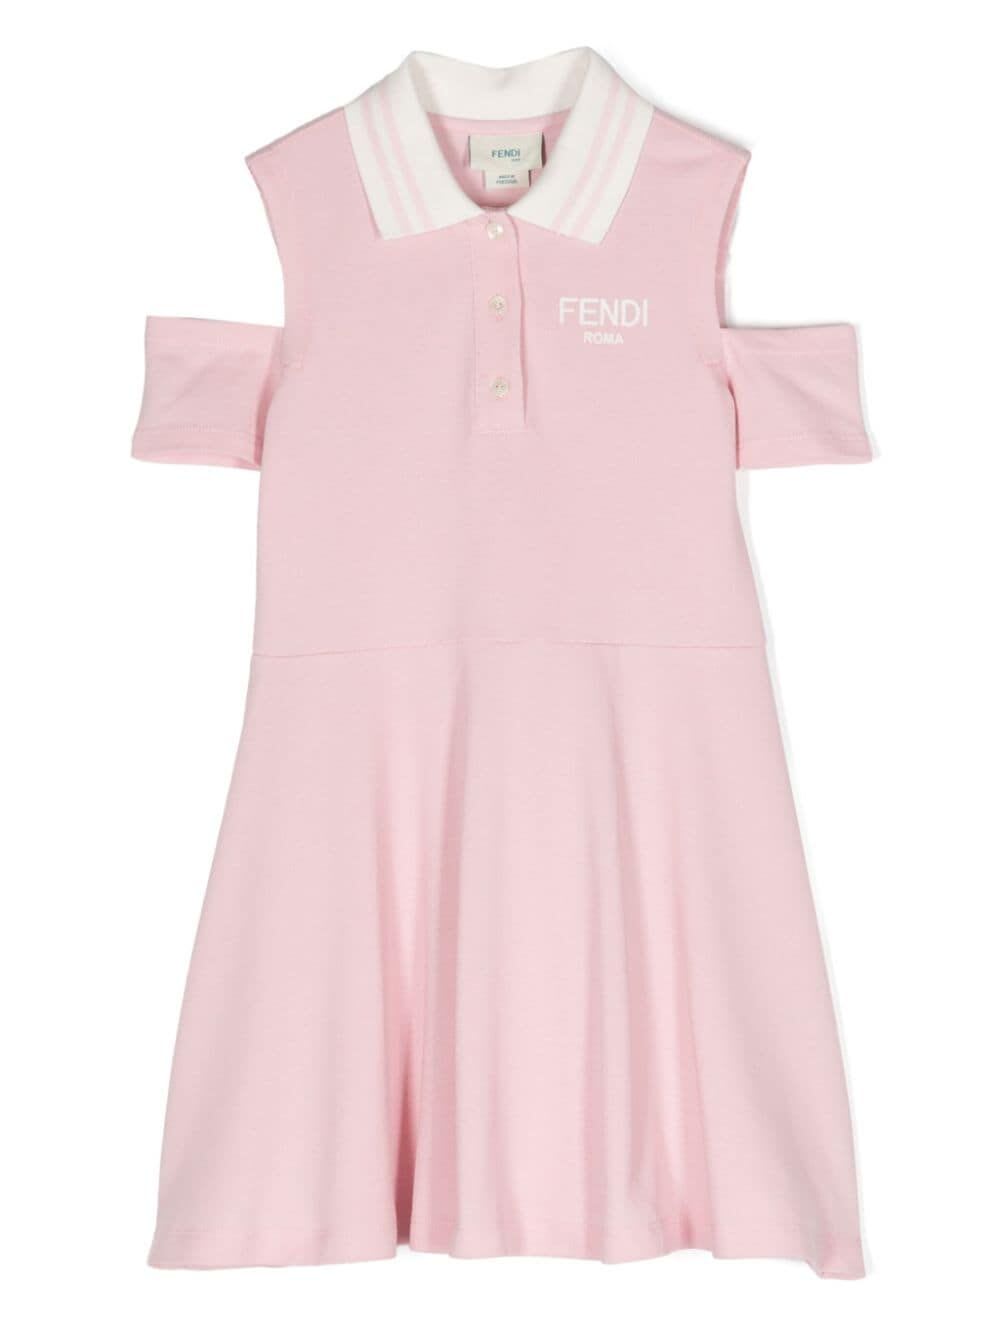 Fendi Kids' Cotton Piquet Dress In Pink